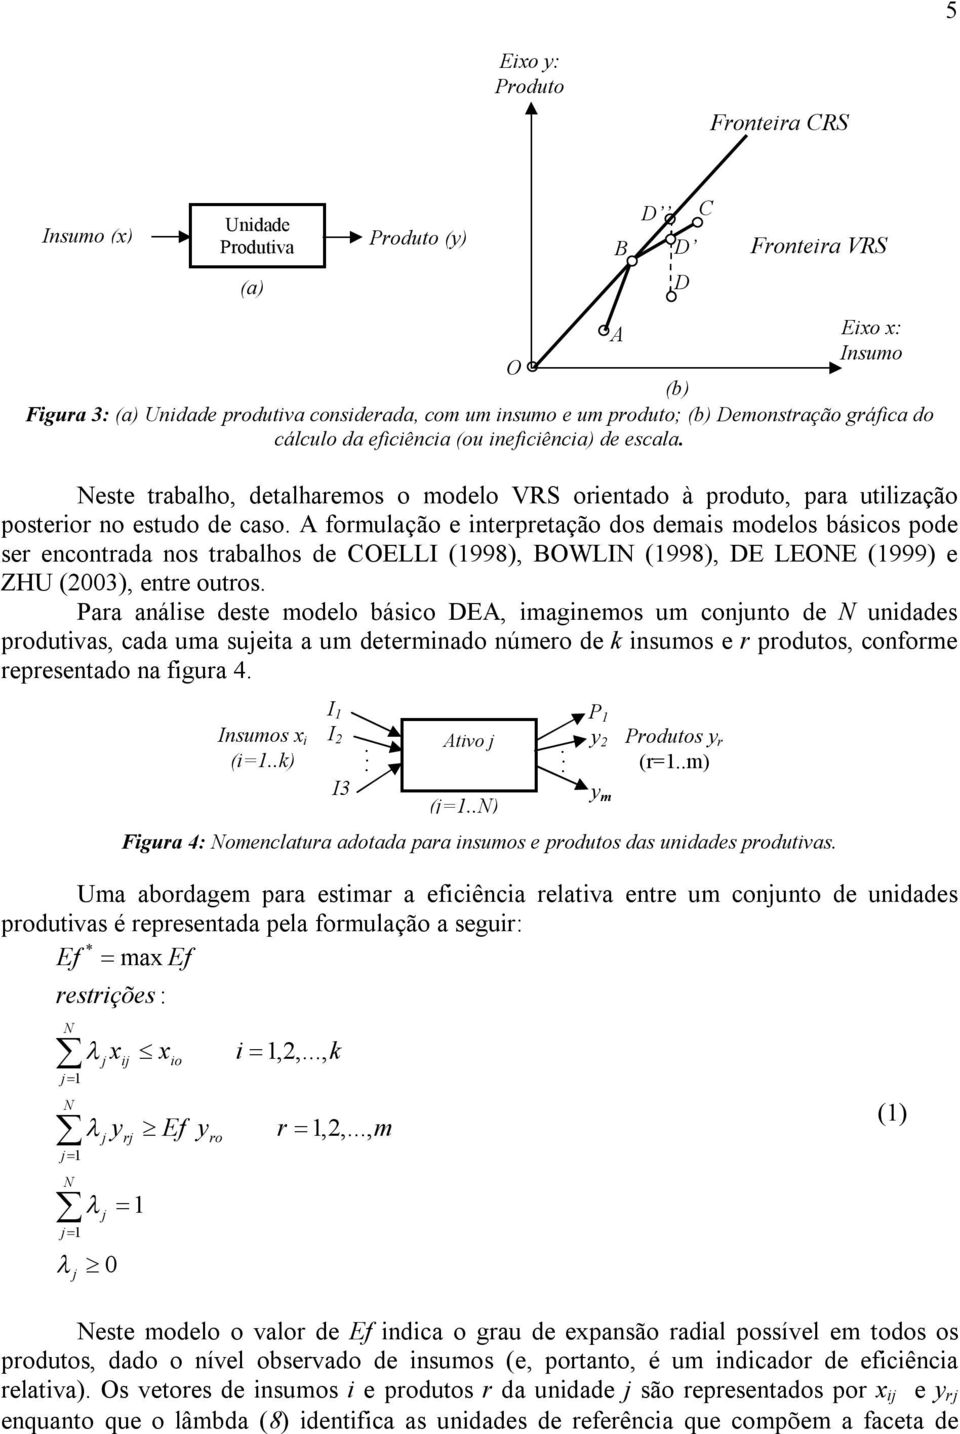 A formulação e interpretação dos demais modelos básicos pode ser encontrada nos trabalhos de COELLI (1998), BOWLIN (1998), DE LEONE (1999) e ZHU (2003), entre outros.